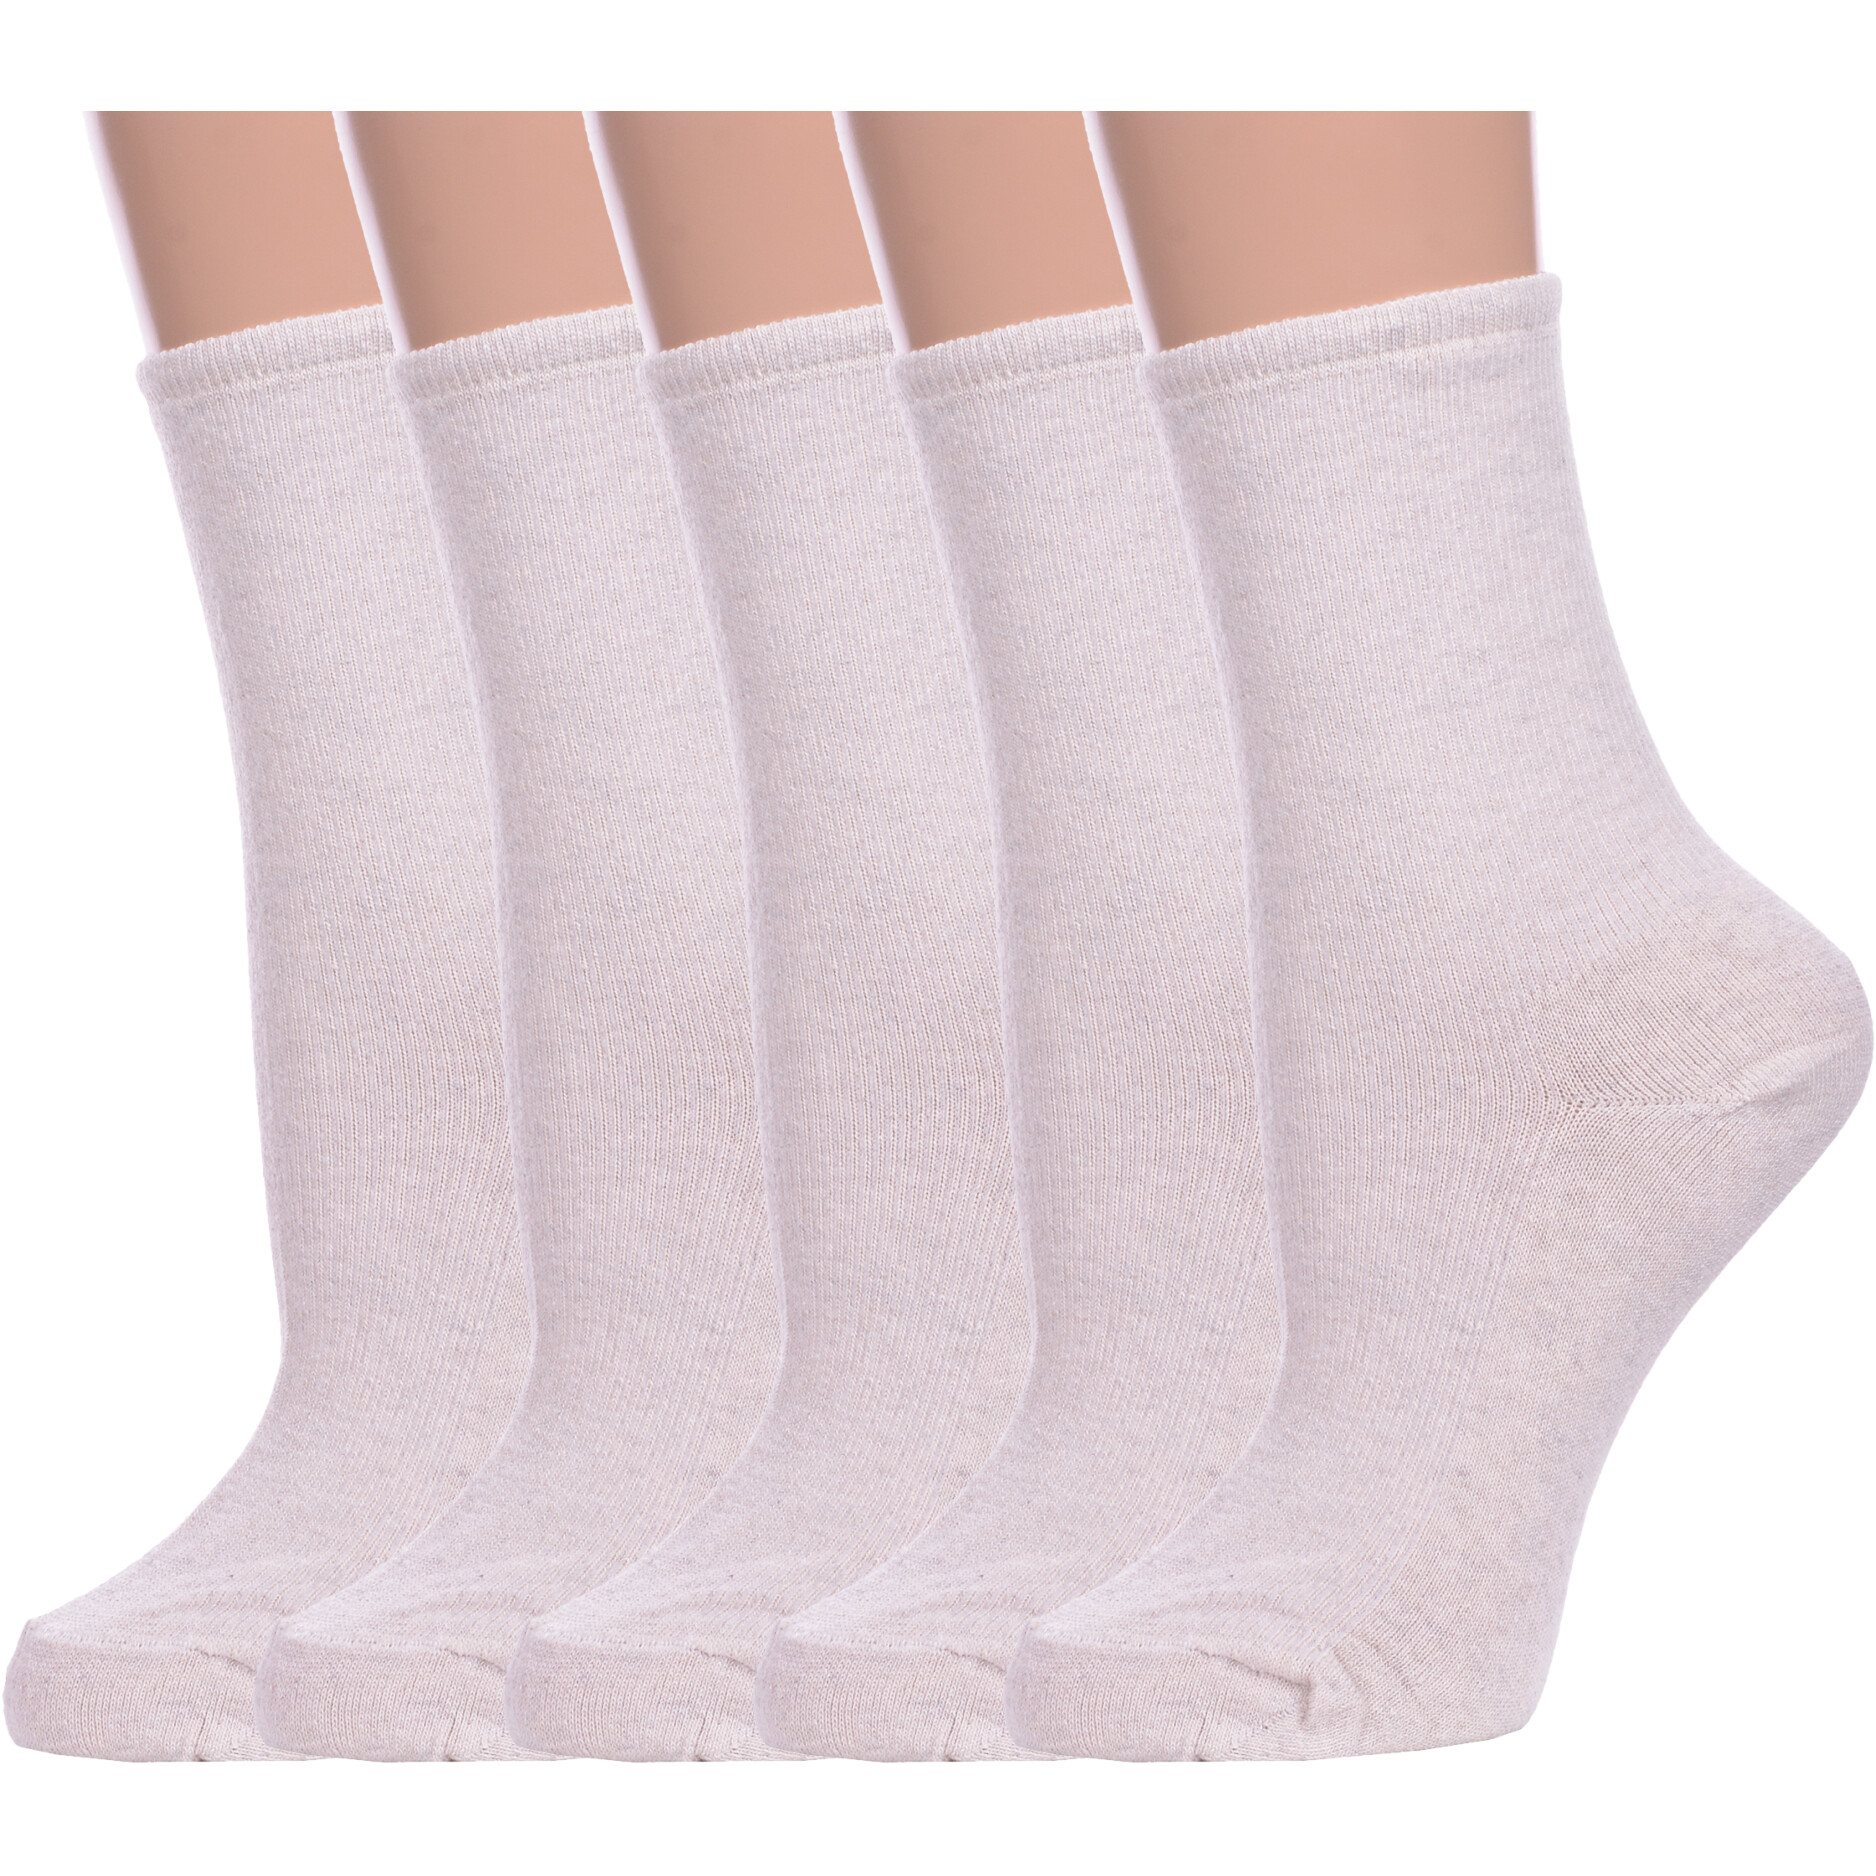 Комплект носков женских Альтаир 5-М198 бежевых 23 5 пар